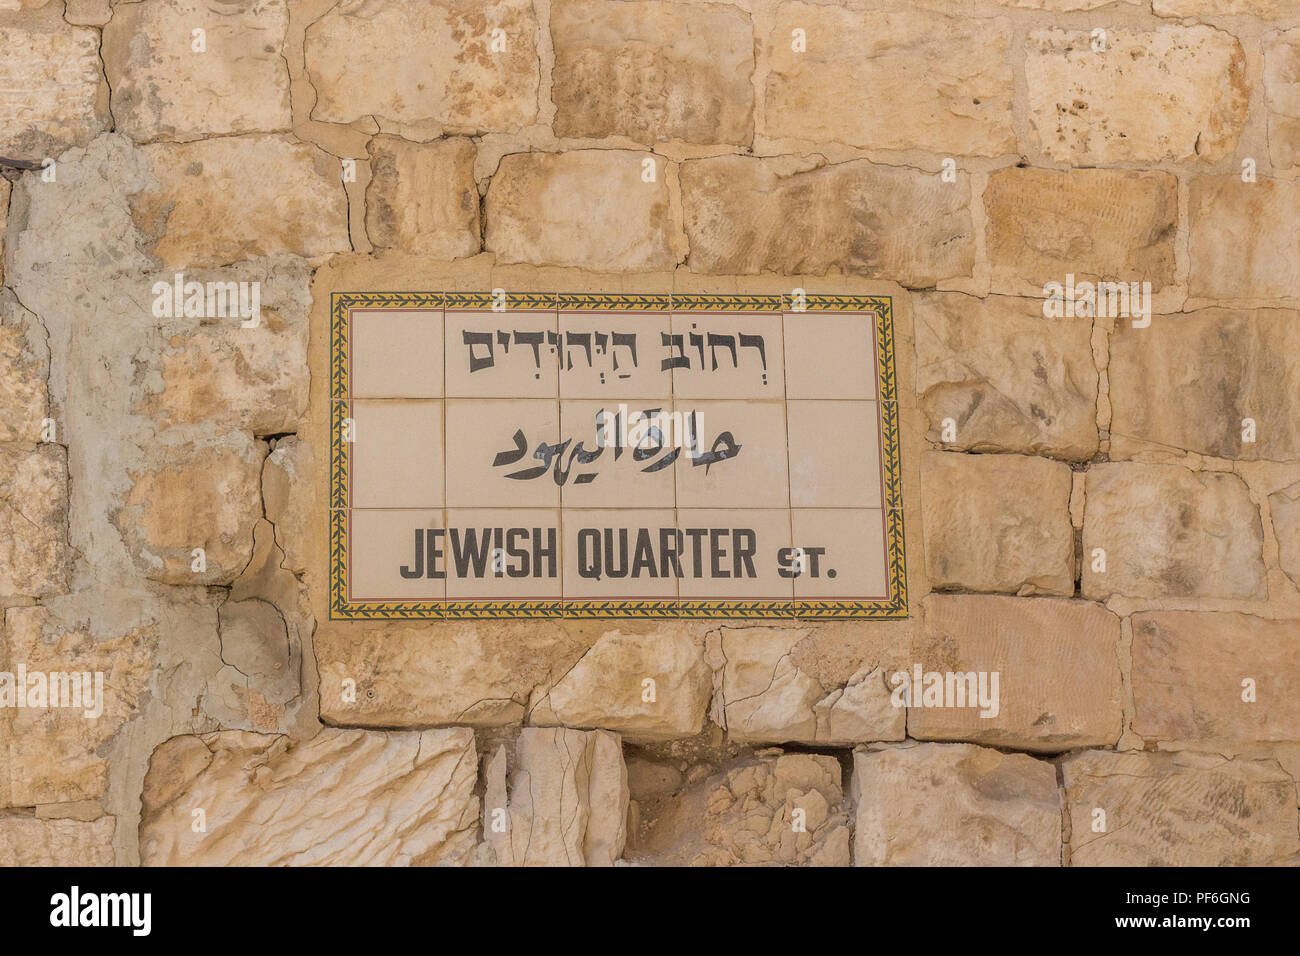 Un signe fait de tuiles représentant le "quartier juif" street, dans la vieille ville de Jérusalem, Israël, Moyen Orient Banque D'Images